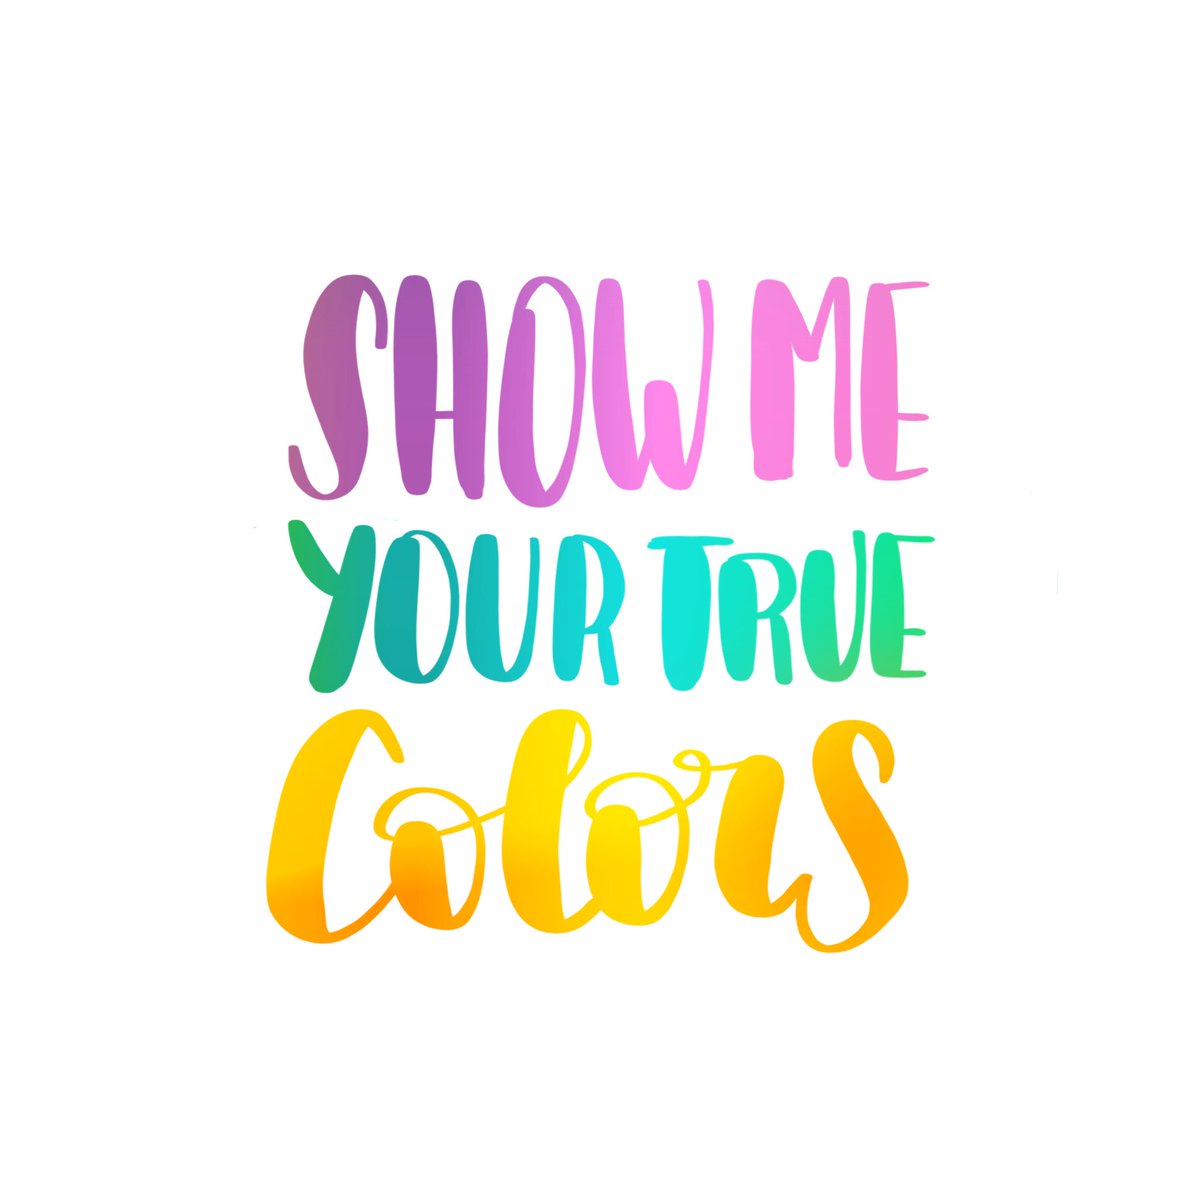 Show me your true colors